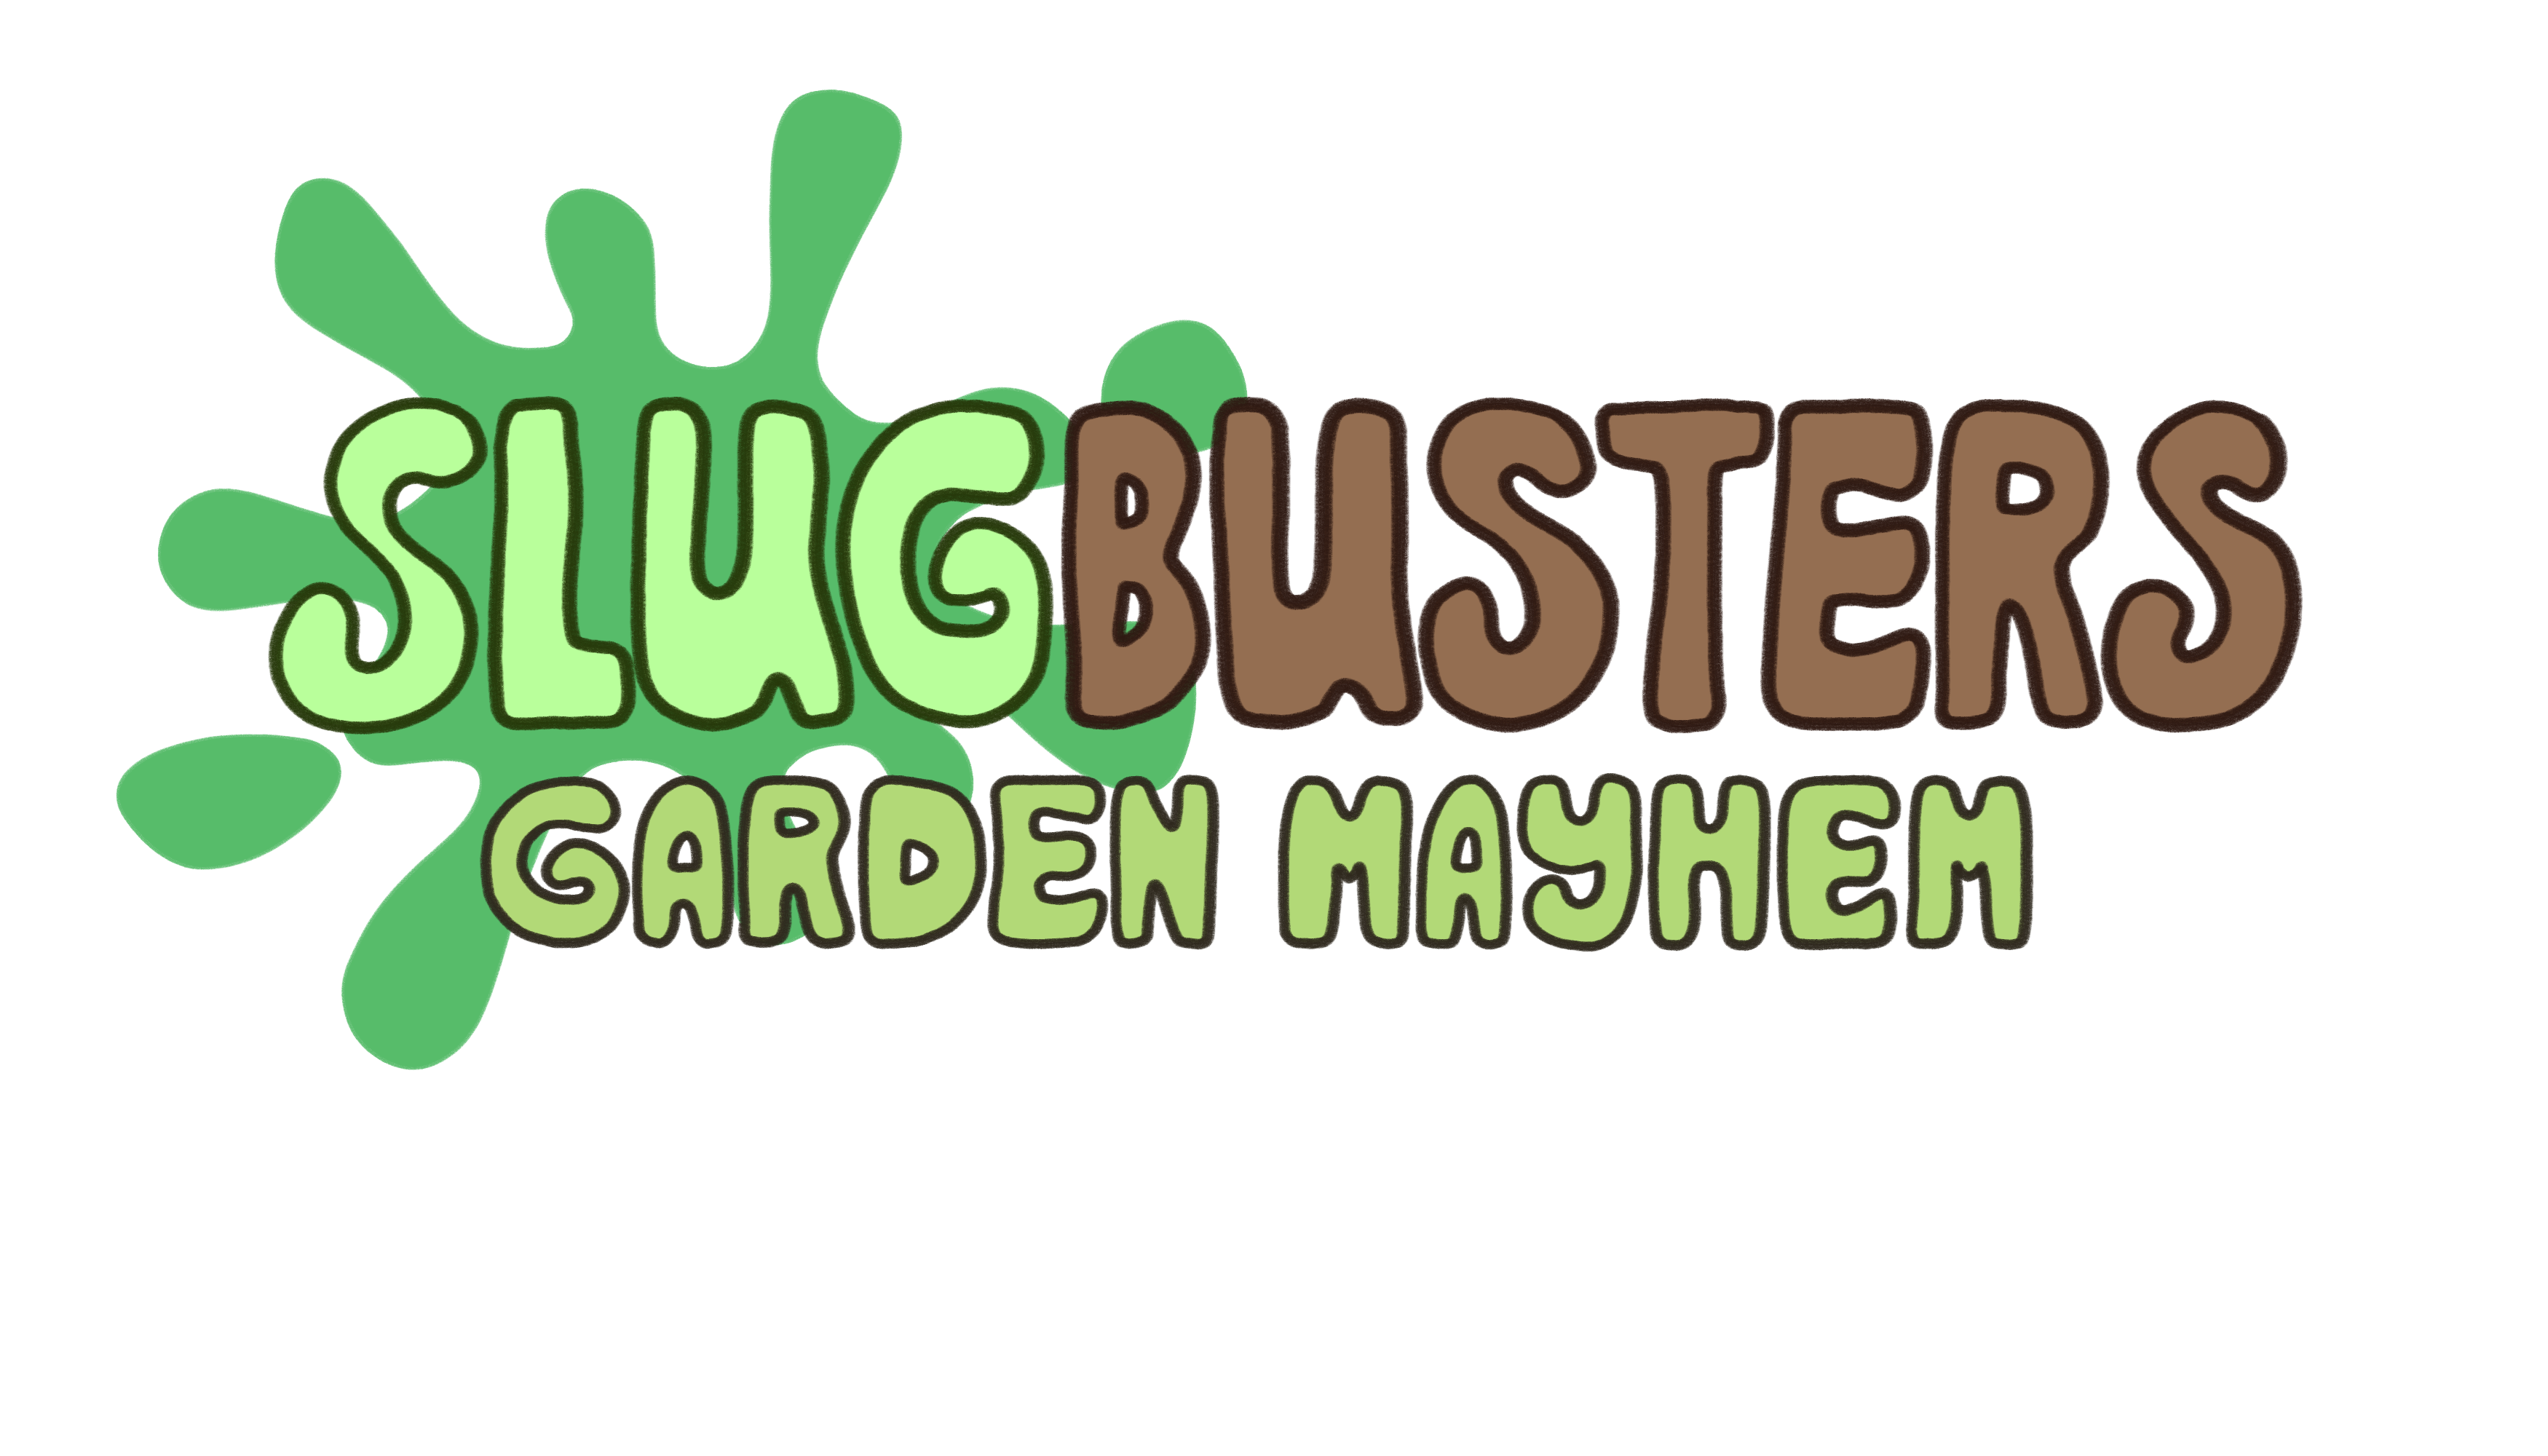 SlugBusters: Garden Mayhem